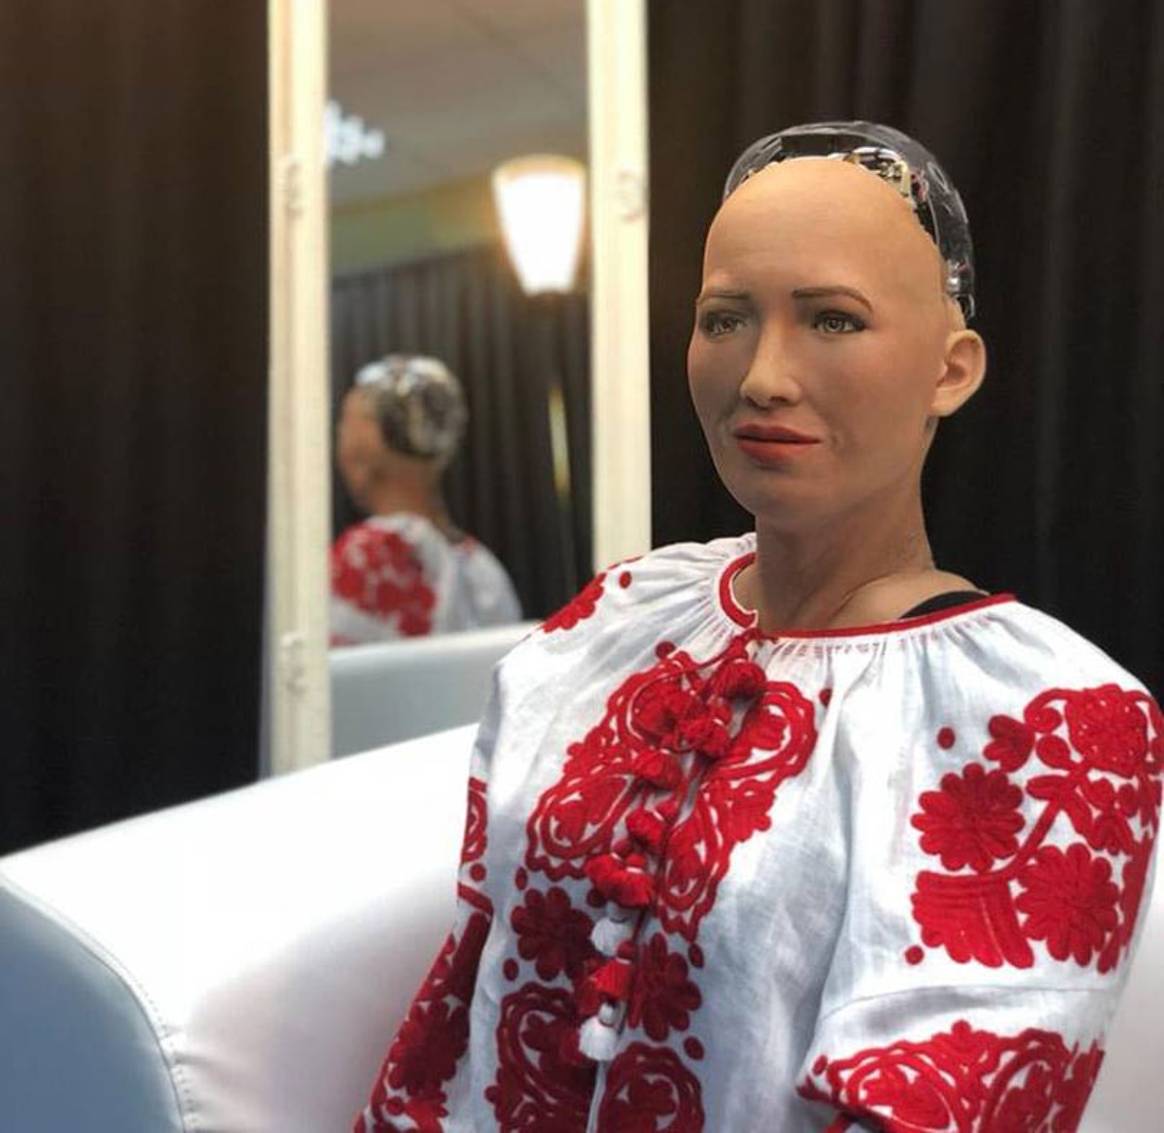 Робот София получила в подарок вышиванку украинского дизайнера Виты Кин